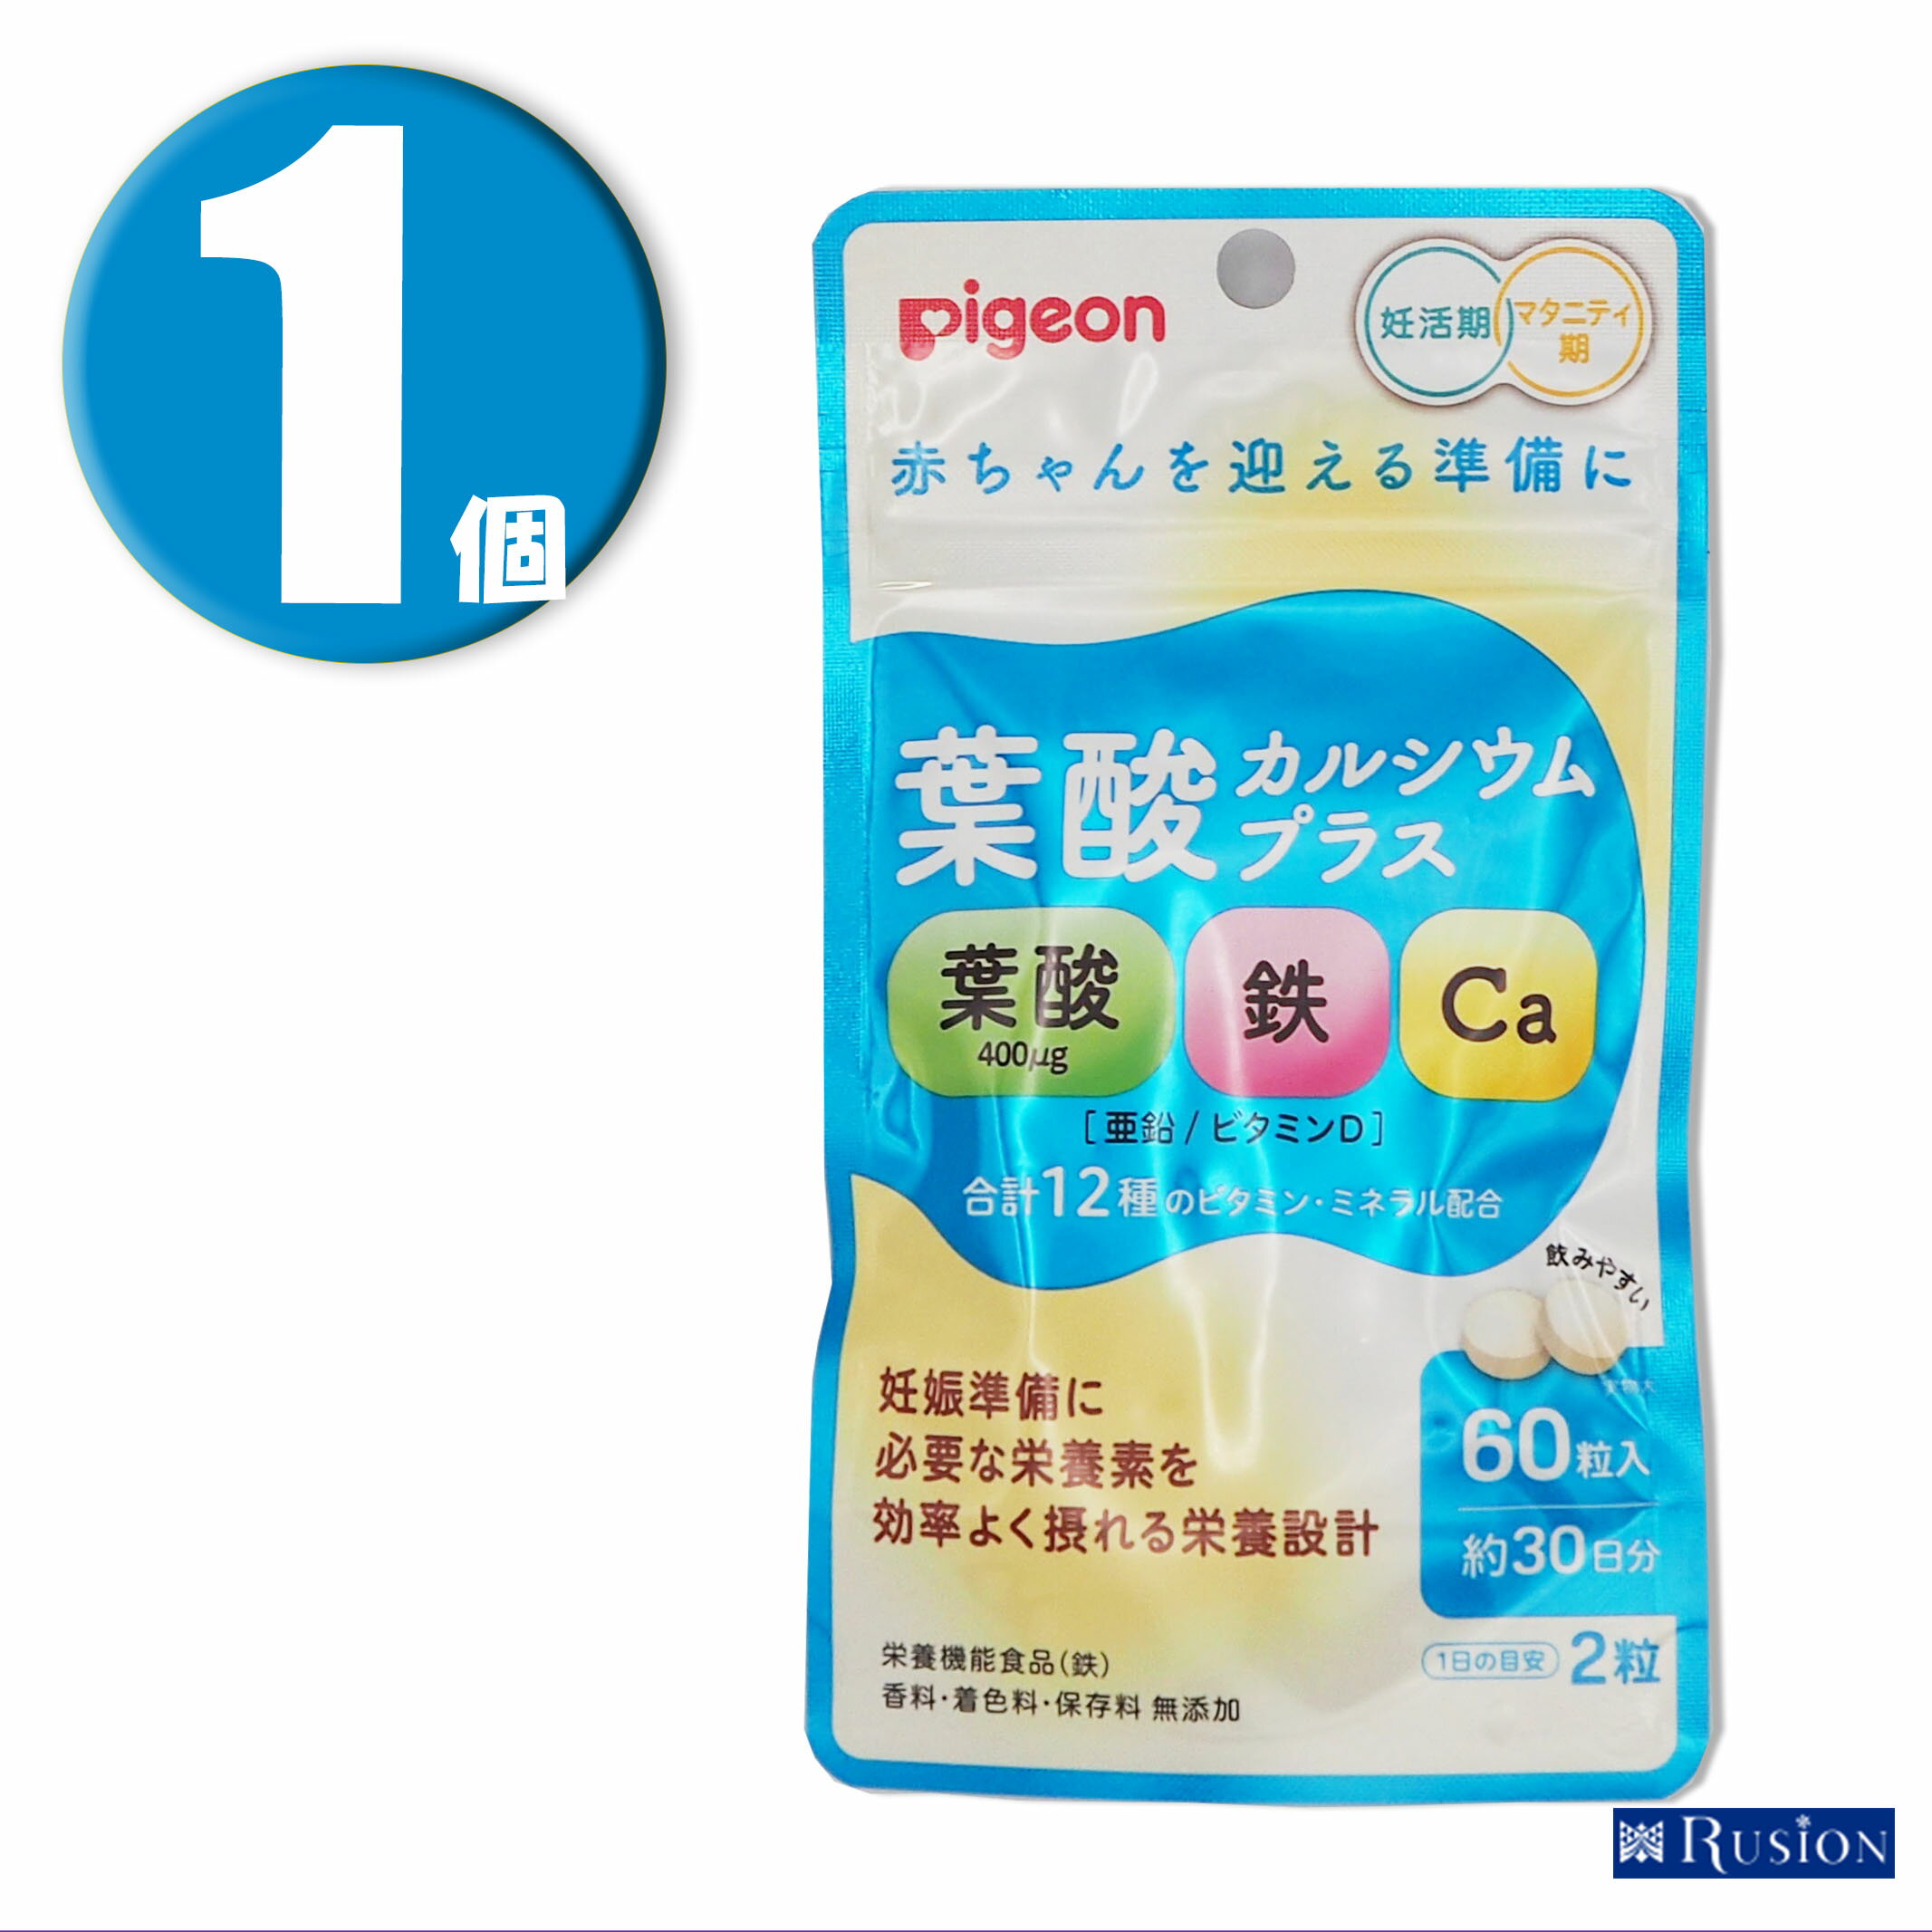 (1個) Pigeon ピジョン サプリメント 葉酸カルシウムプラス 60粒 約30日分 栄養機能食品 妊活期 マタニティ期